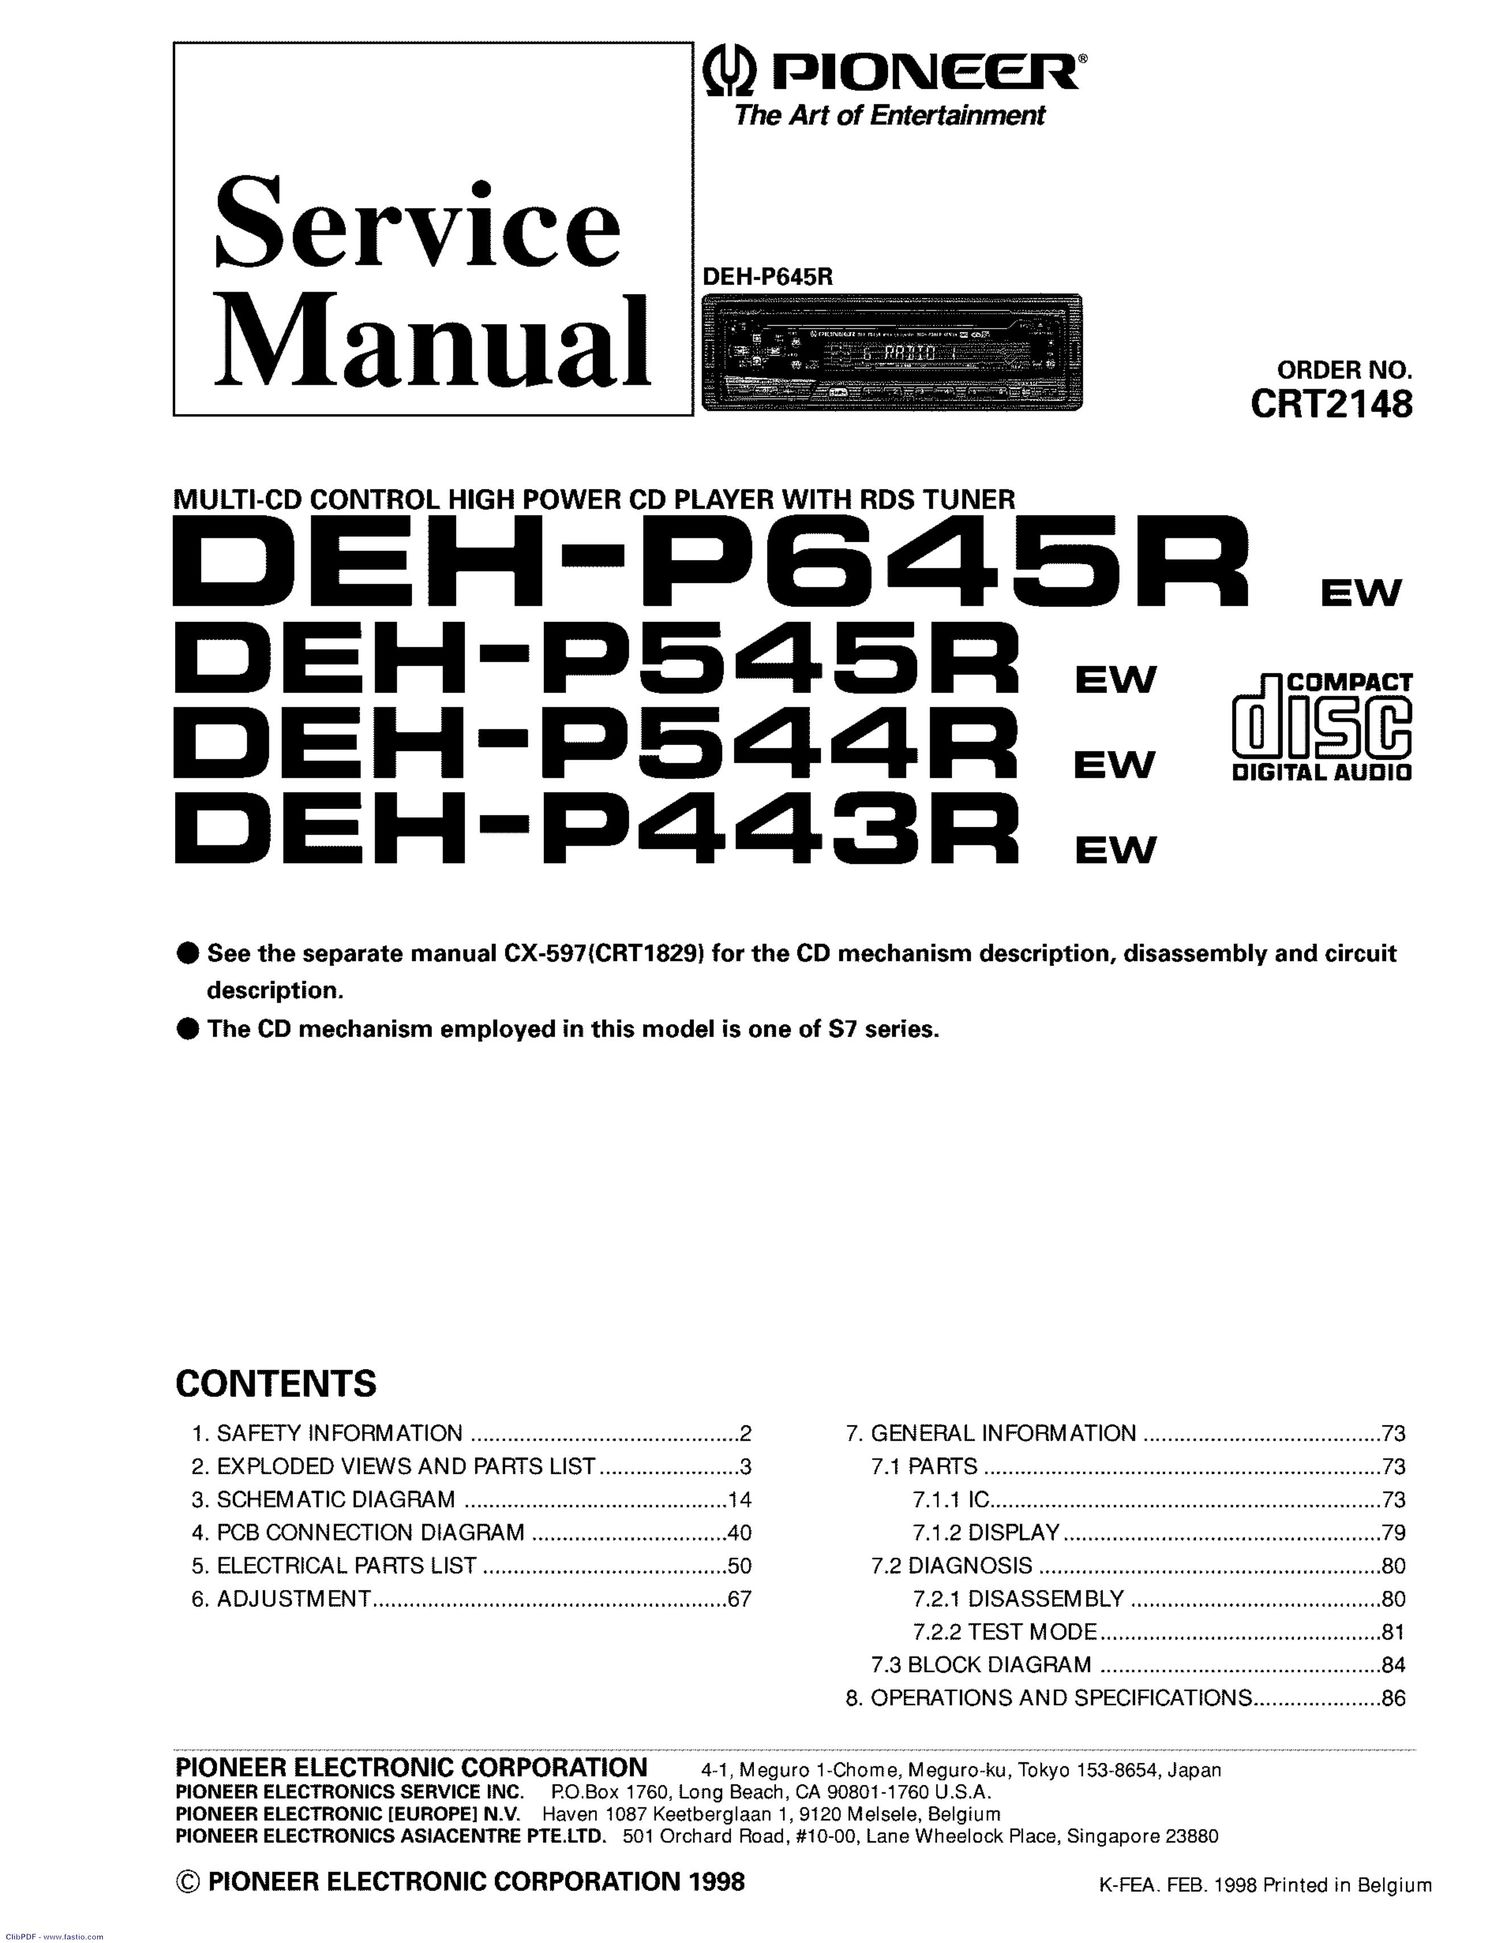 pioneer dehp 544 r service manual